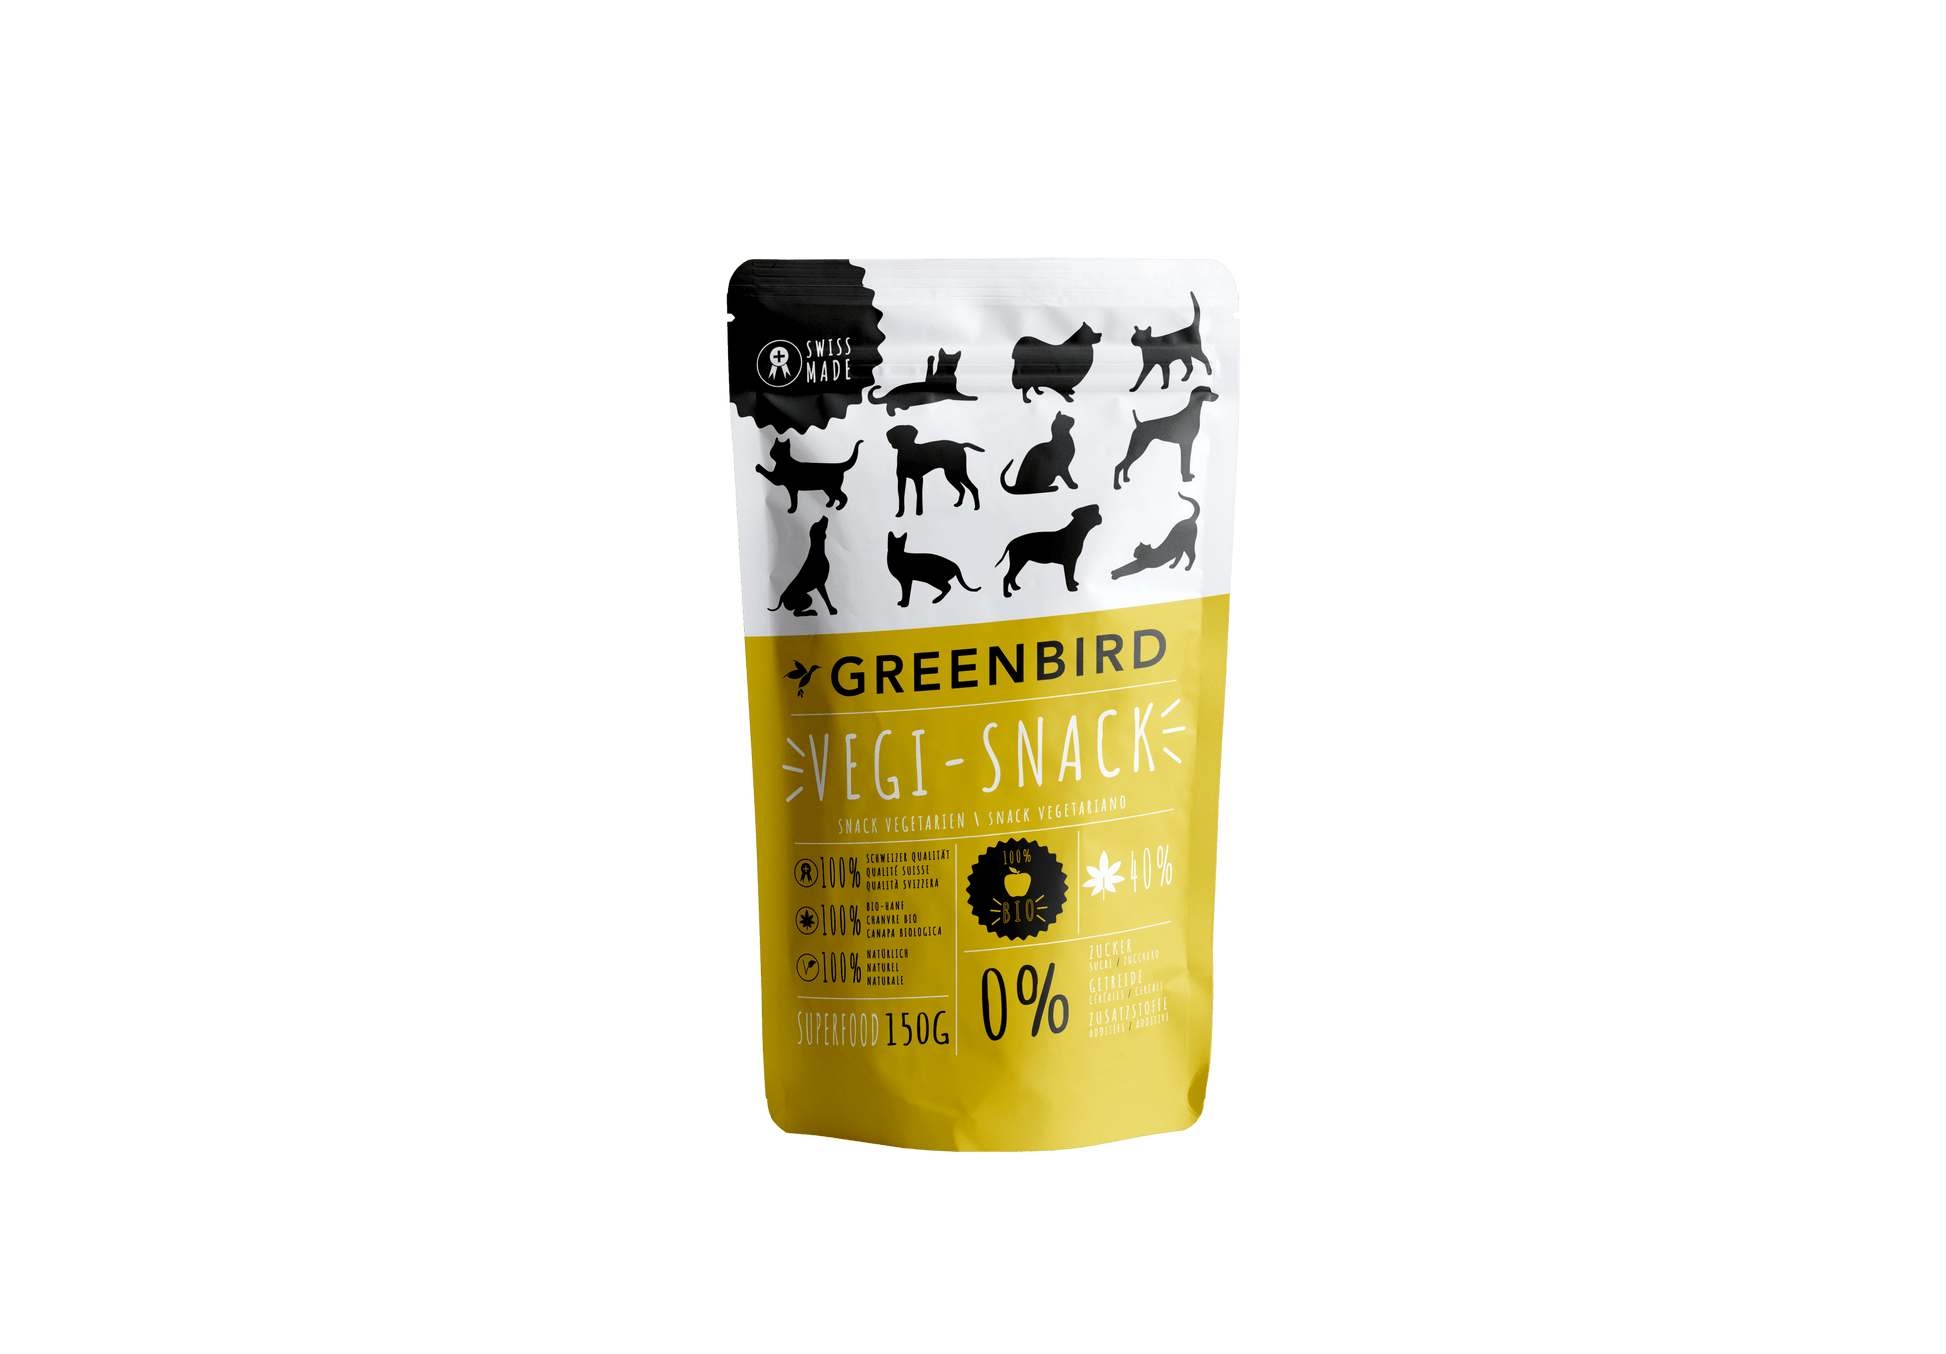 Swiss Hand Made Snack - greenbird - Kauartikel:Rind, Kauartikel:Vegetarisch, Kauartkel:Huhn, Tierart:Hund, Tierart:Katze, Tierart:Pferd - Marigin AG Onlineshop für Tierbedarf